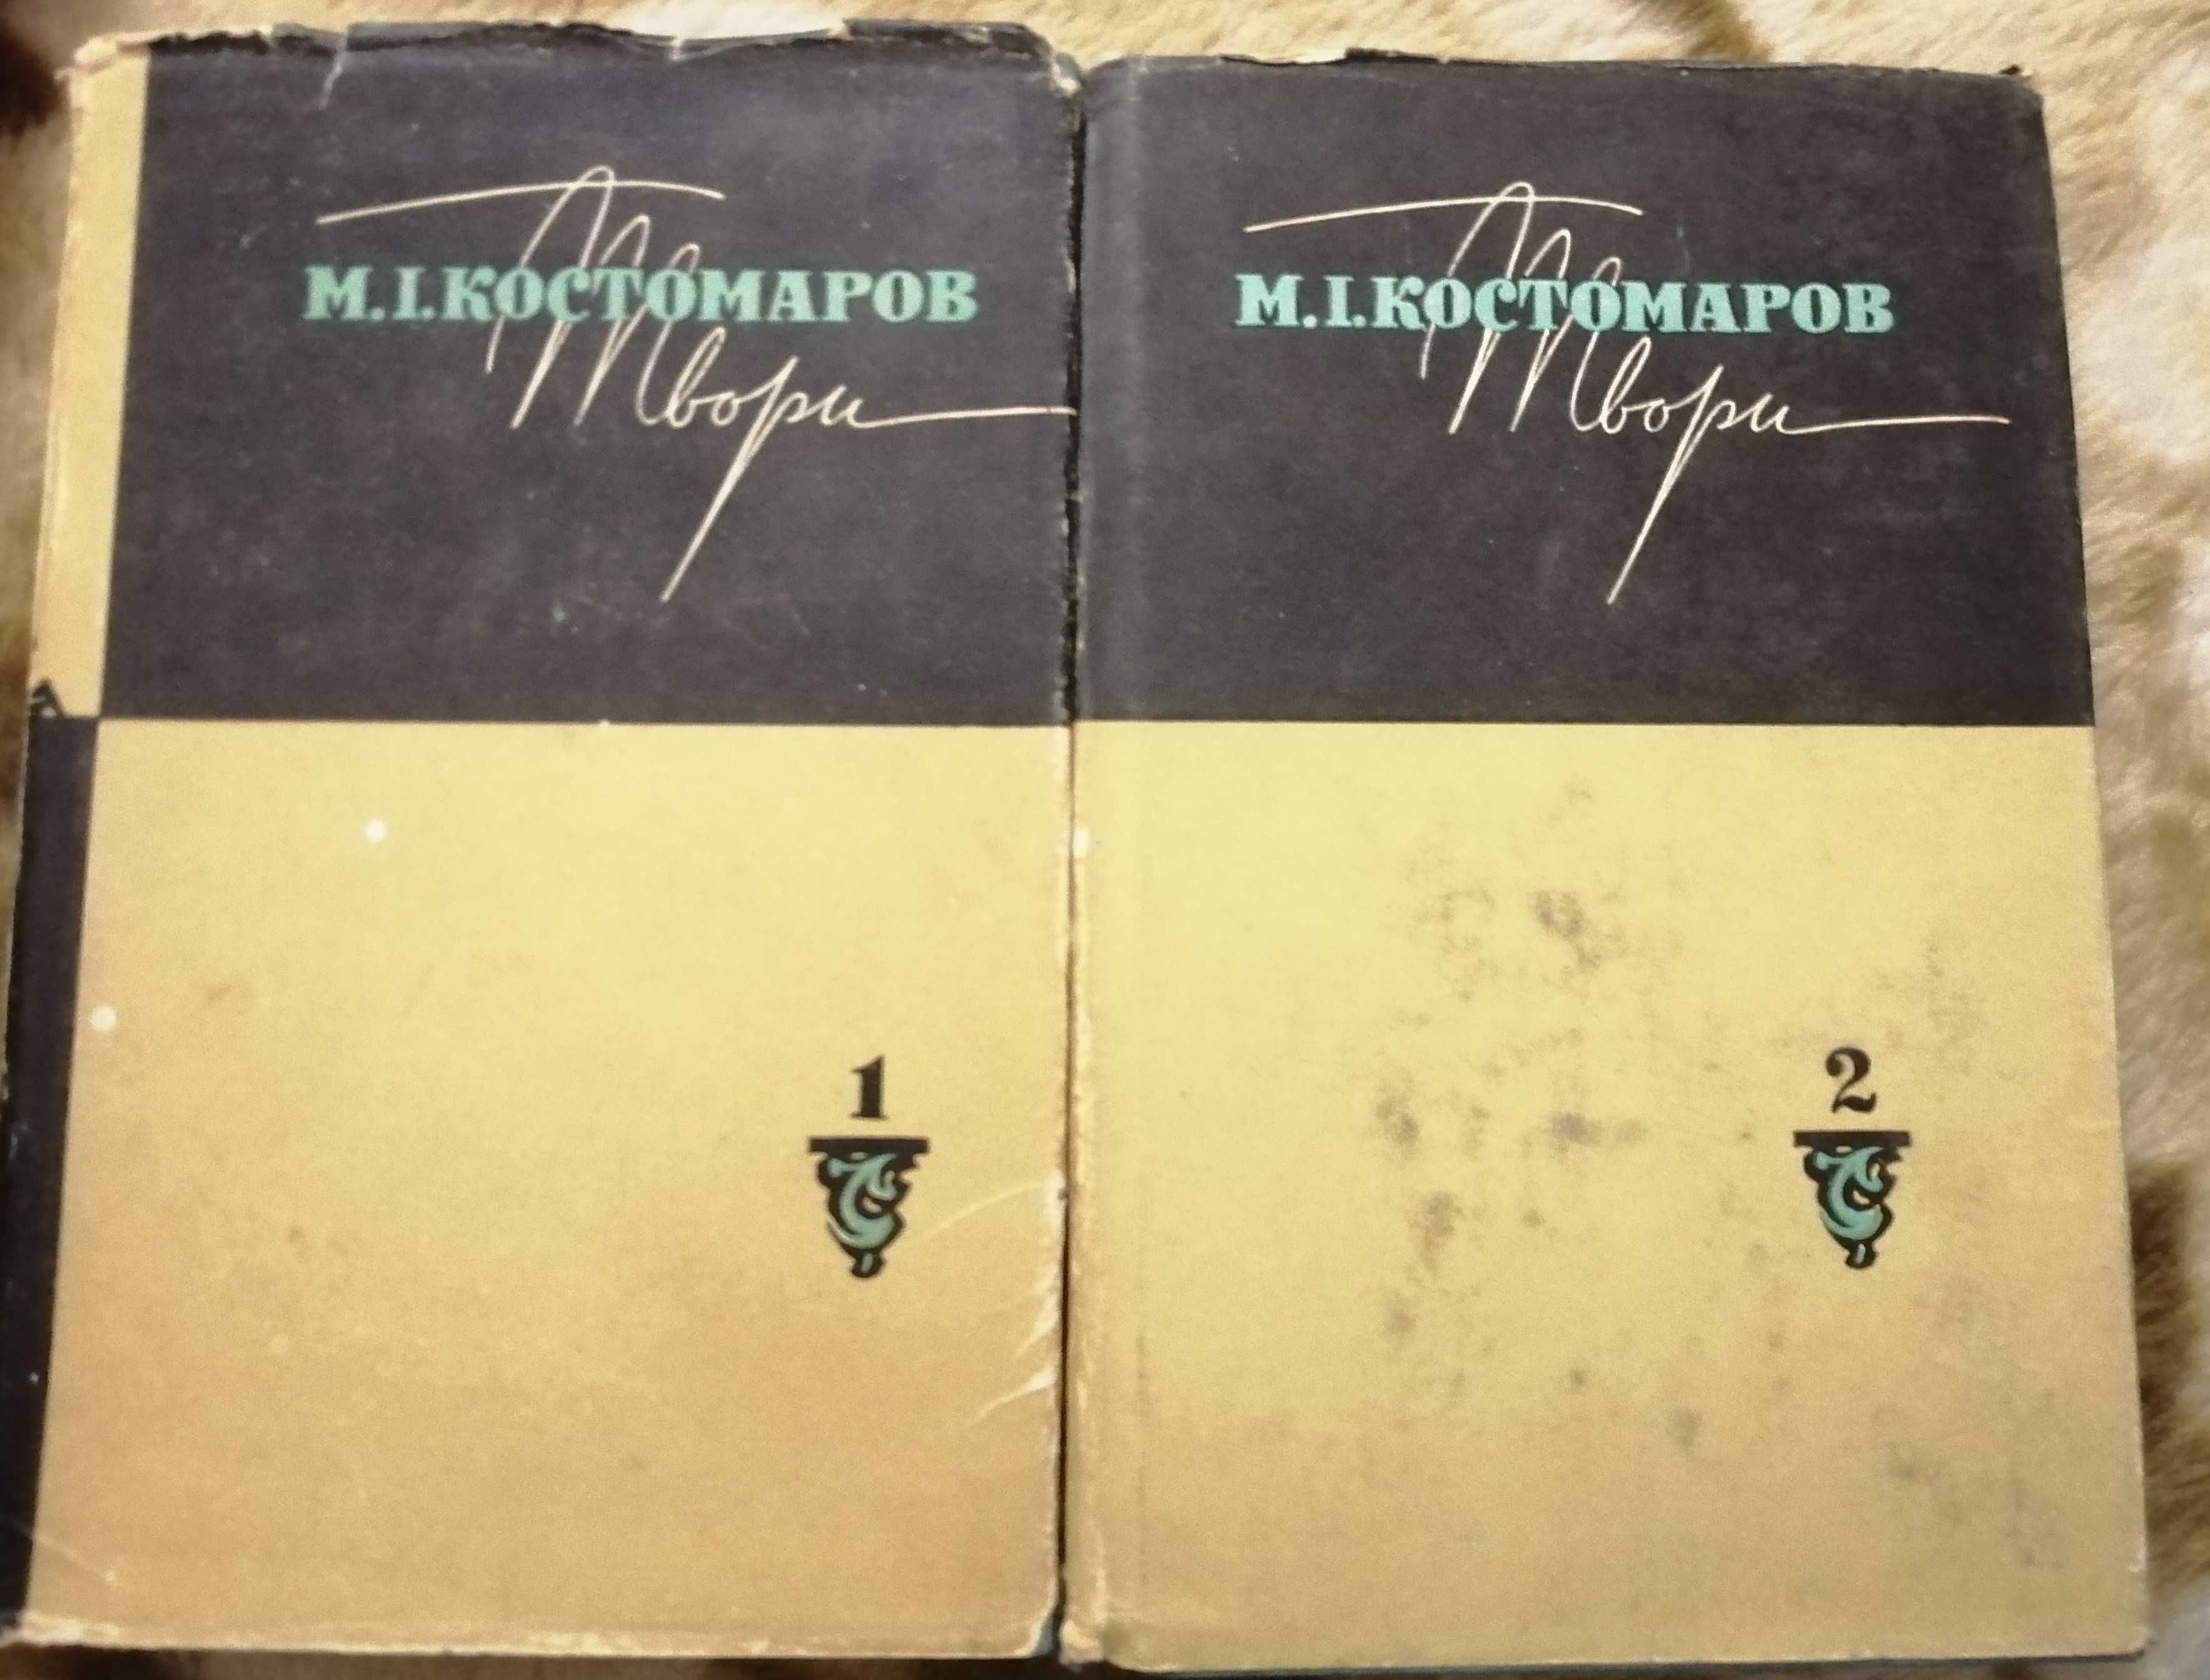 Микола Костомаров в 2-х томах, вид-во Дніпро, 1967 рік